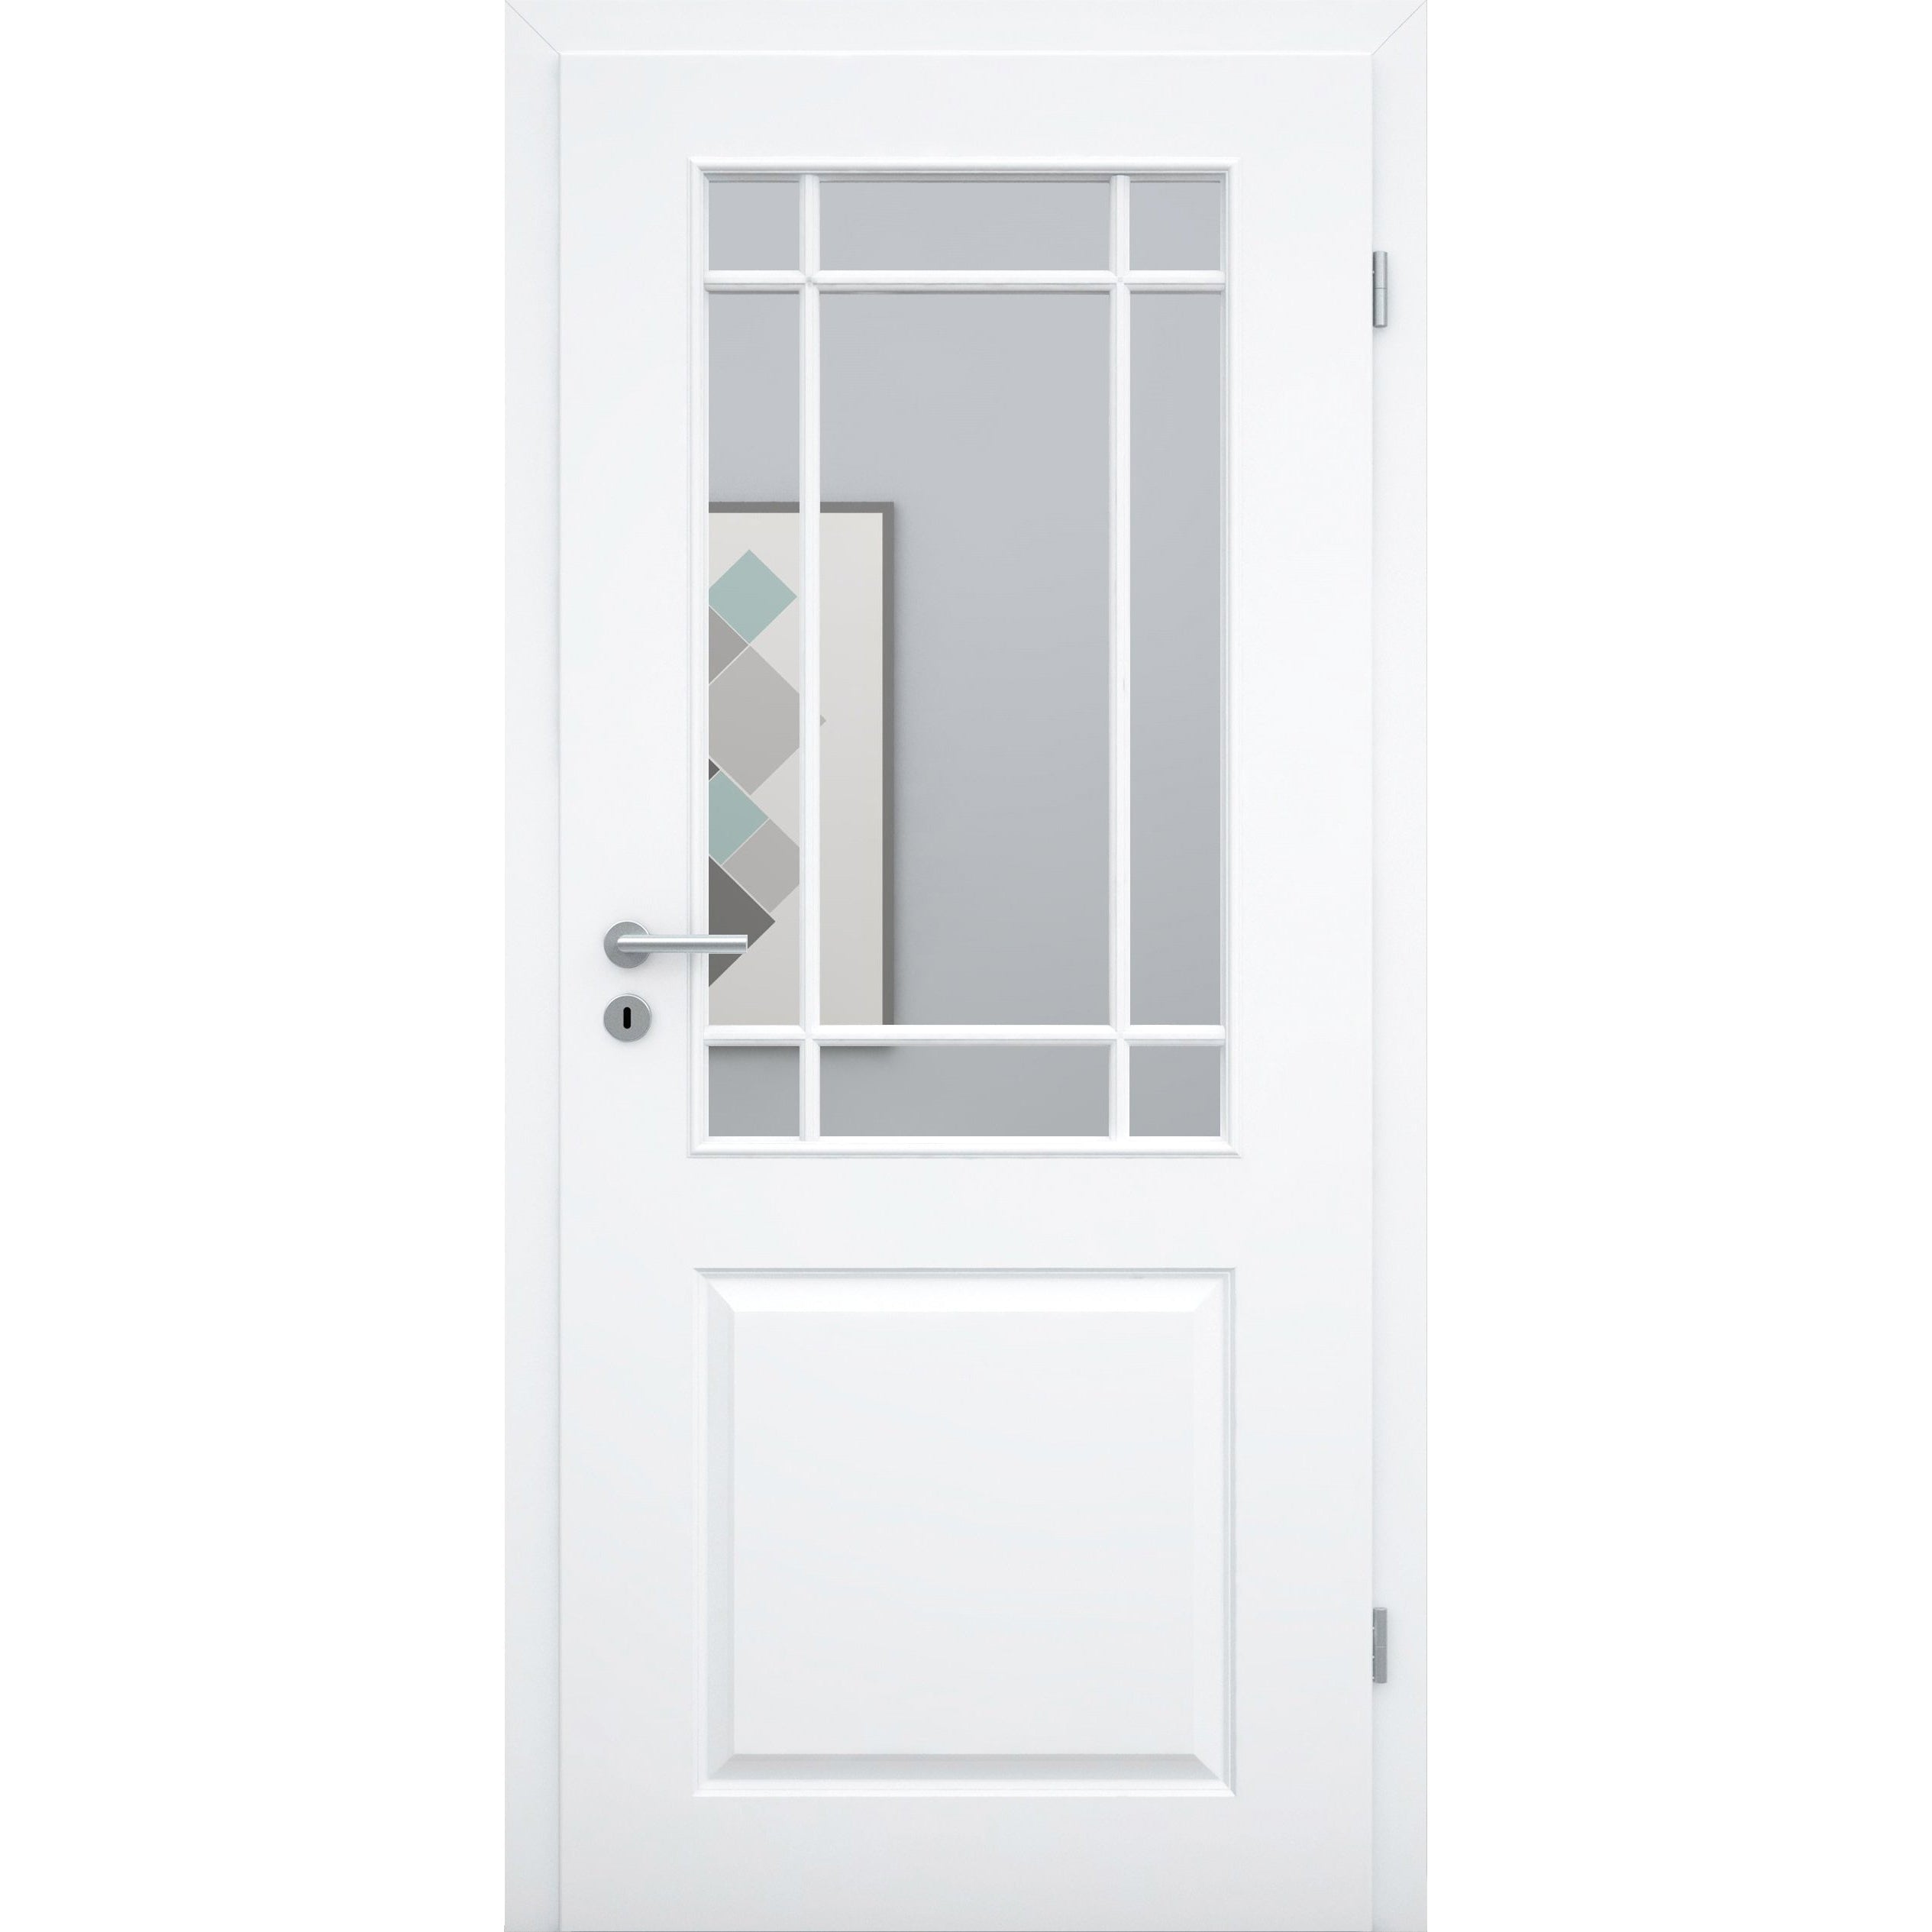 Zimmertür mit Zarge und Lichtausschnitt mit Sprossenrahmen klassisch brillant-weiß 2 Kassetten Designkante - Modell Stiltür K23LASPK